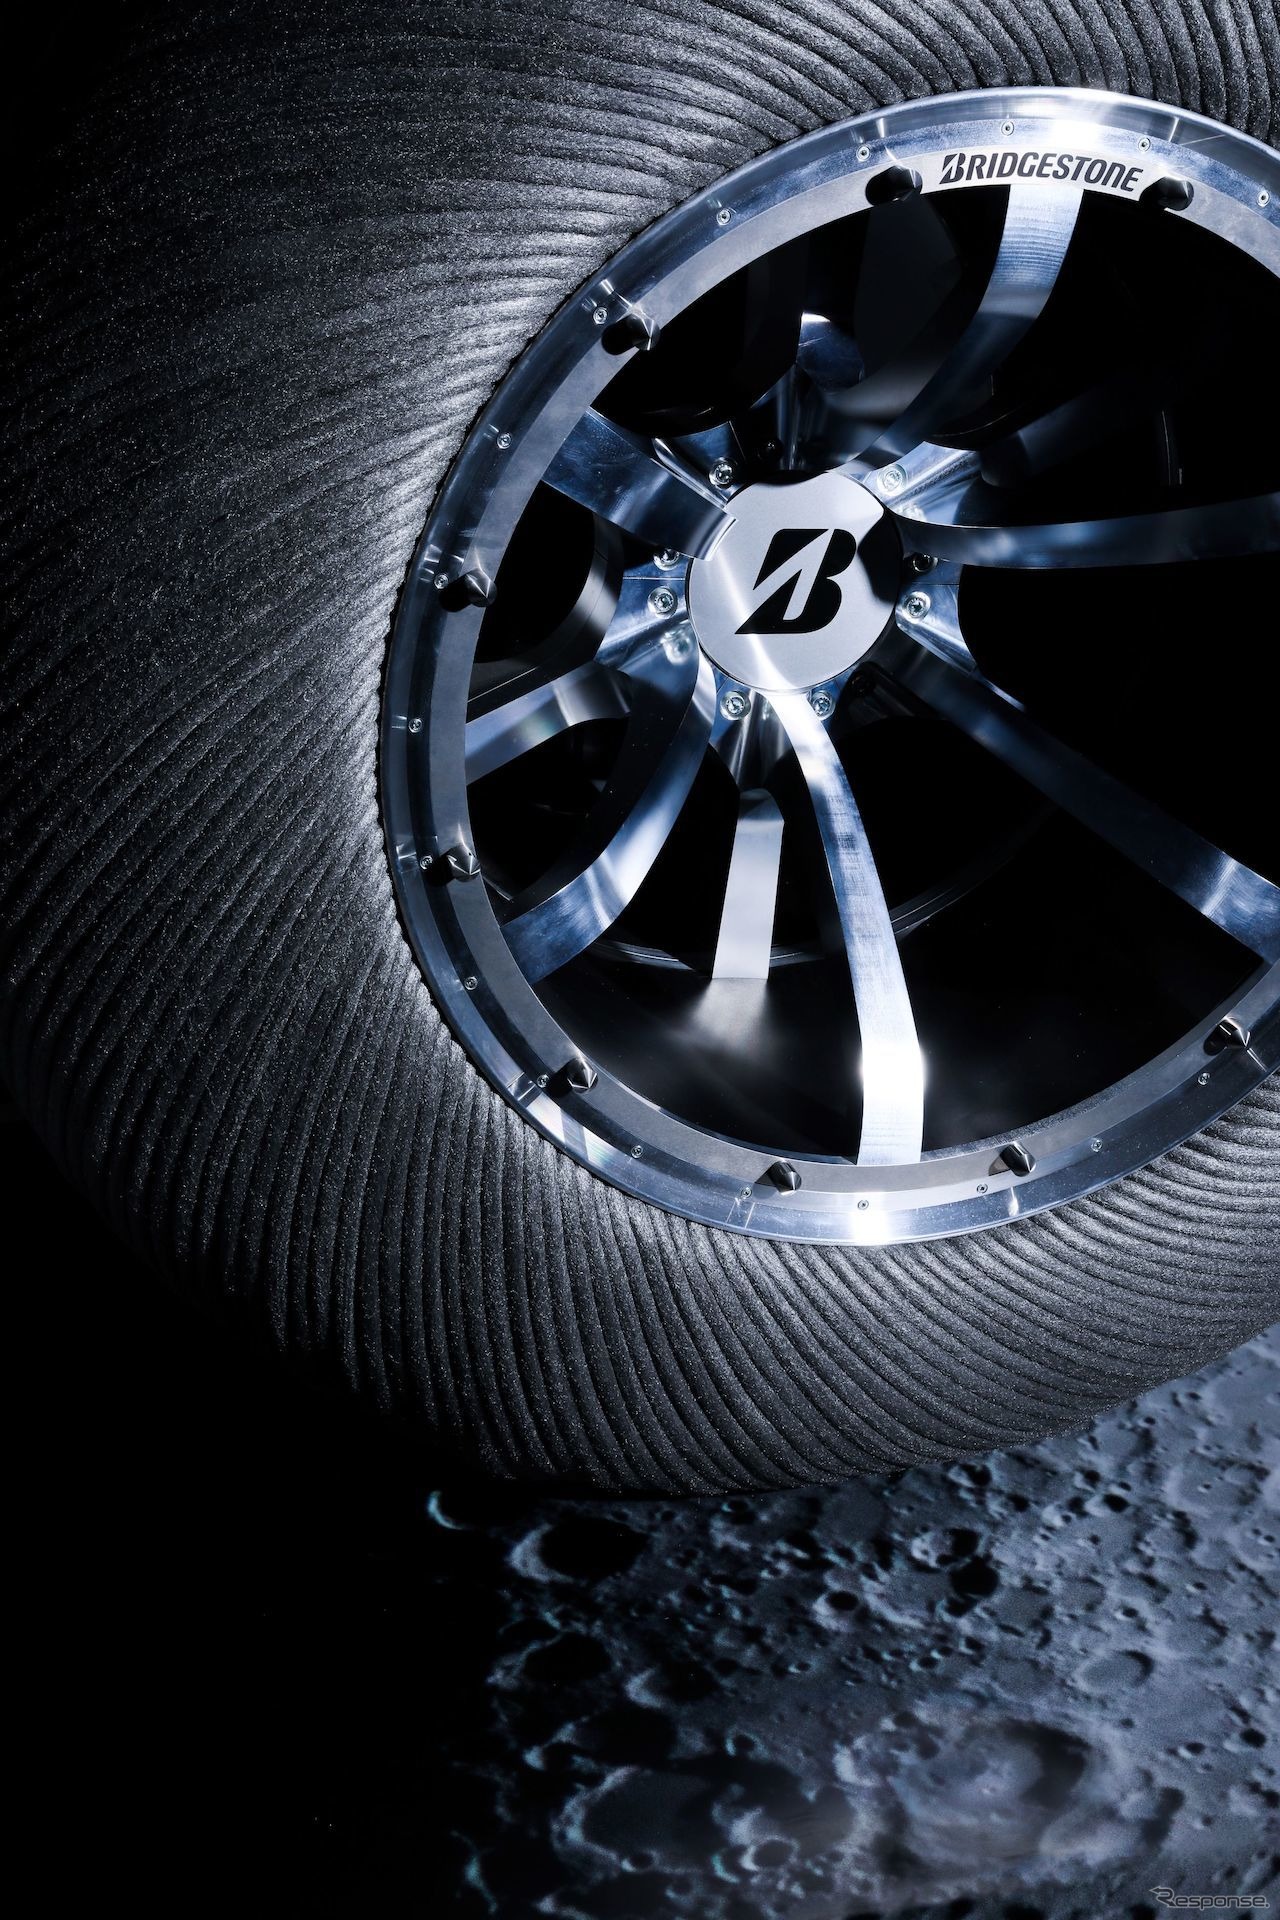 ブリヂストンが研究開発している月面探査車用タイヤのコンセプトモデル